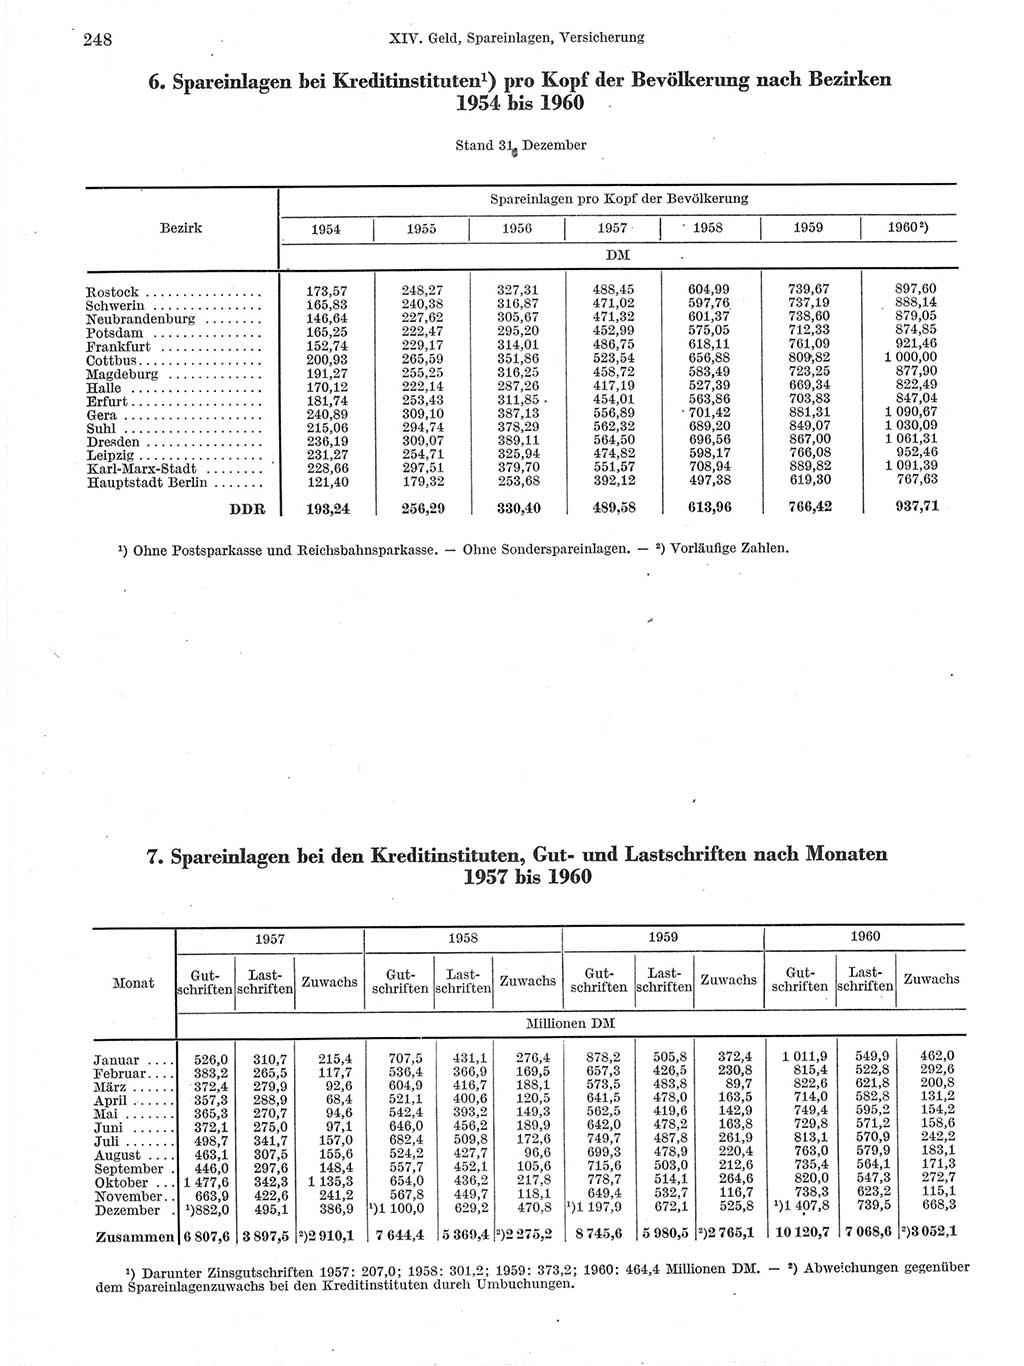 Statistisches Jahrbuch der Deutschen Demokratischen Republik (DDR) 1960-1961, Seite 248 (Stat. Jb. DDR 1960-1961, S. 248)